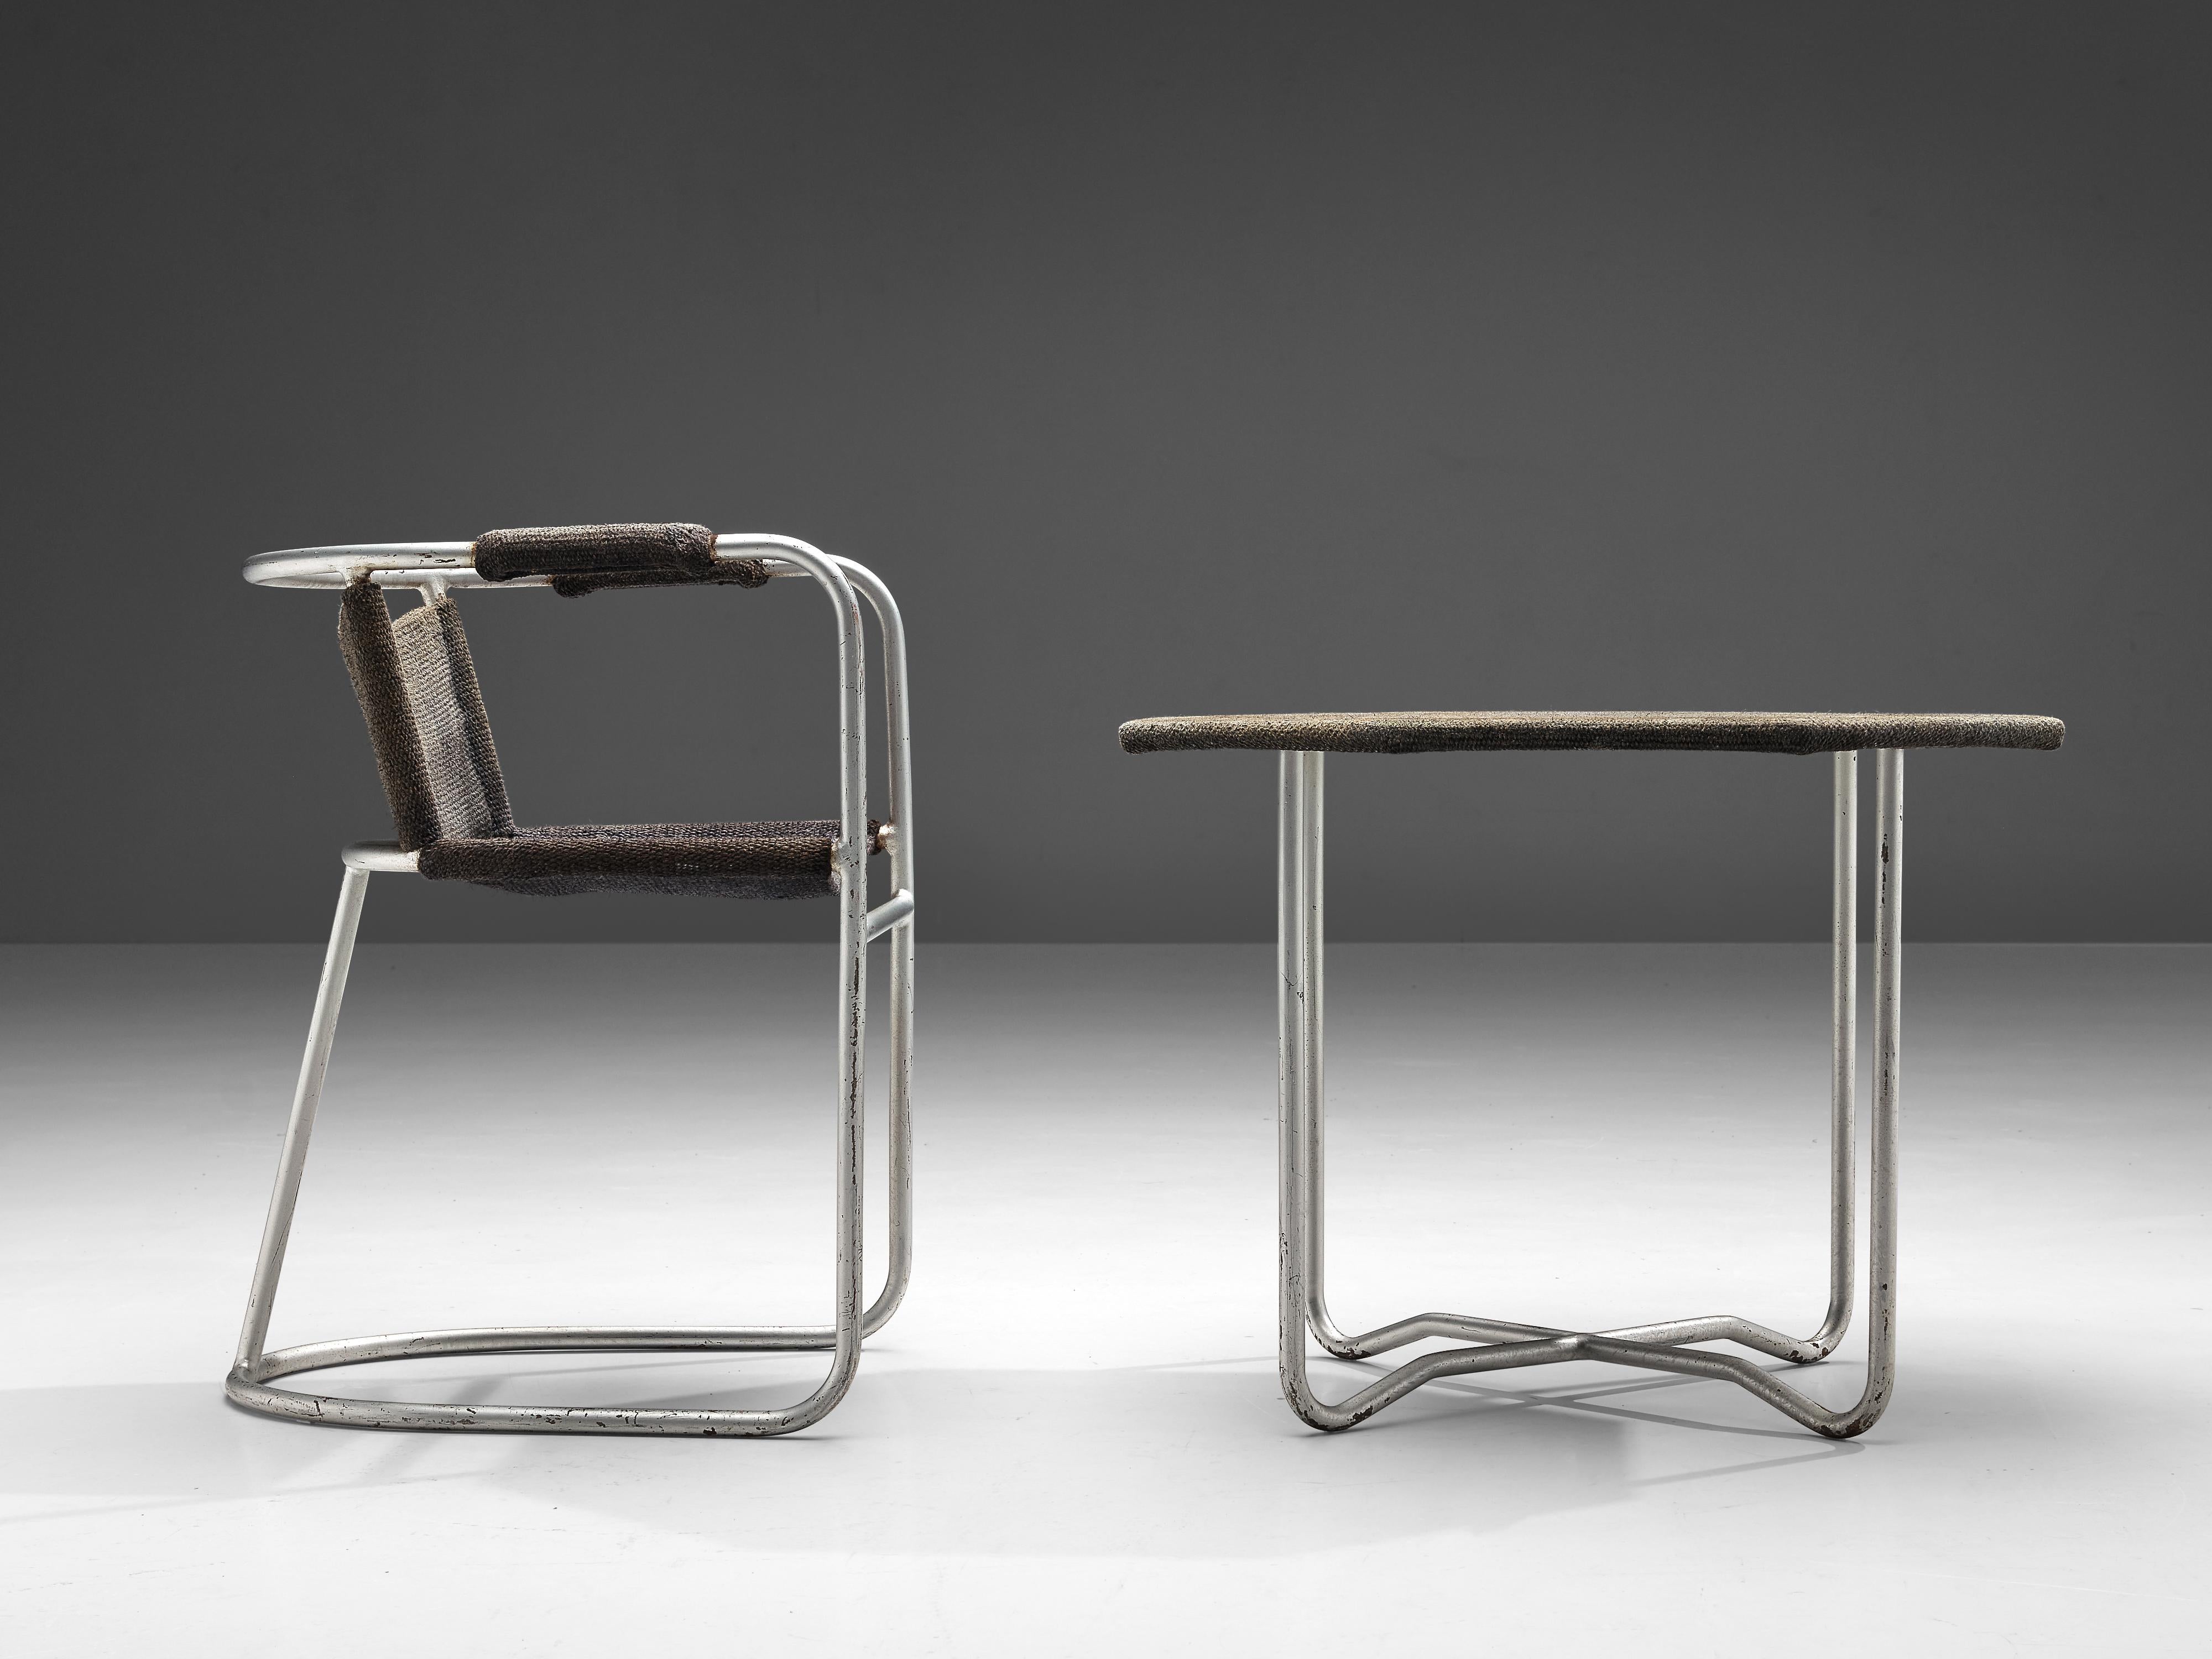 Bas van Pelt Patinated Armchair and Coffee Table in Metal and Original Sisal 1